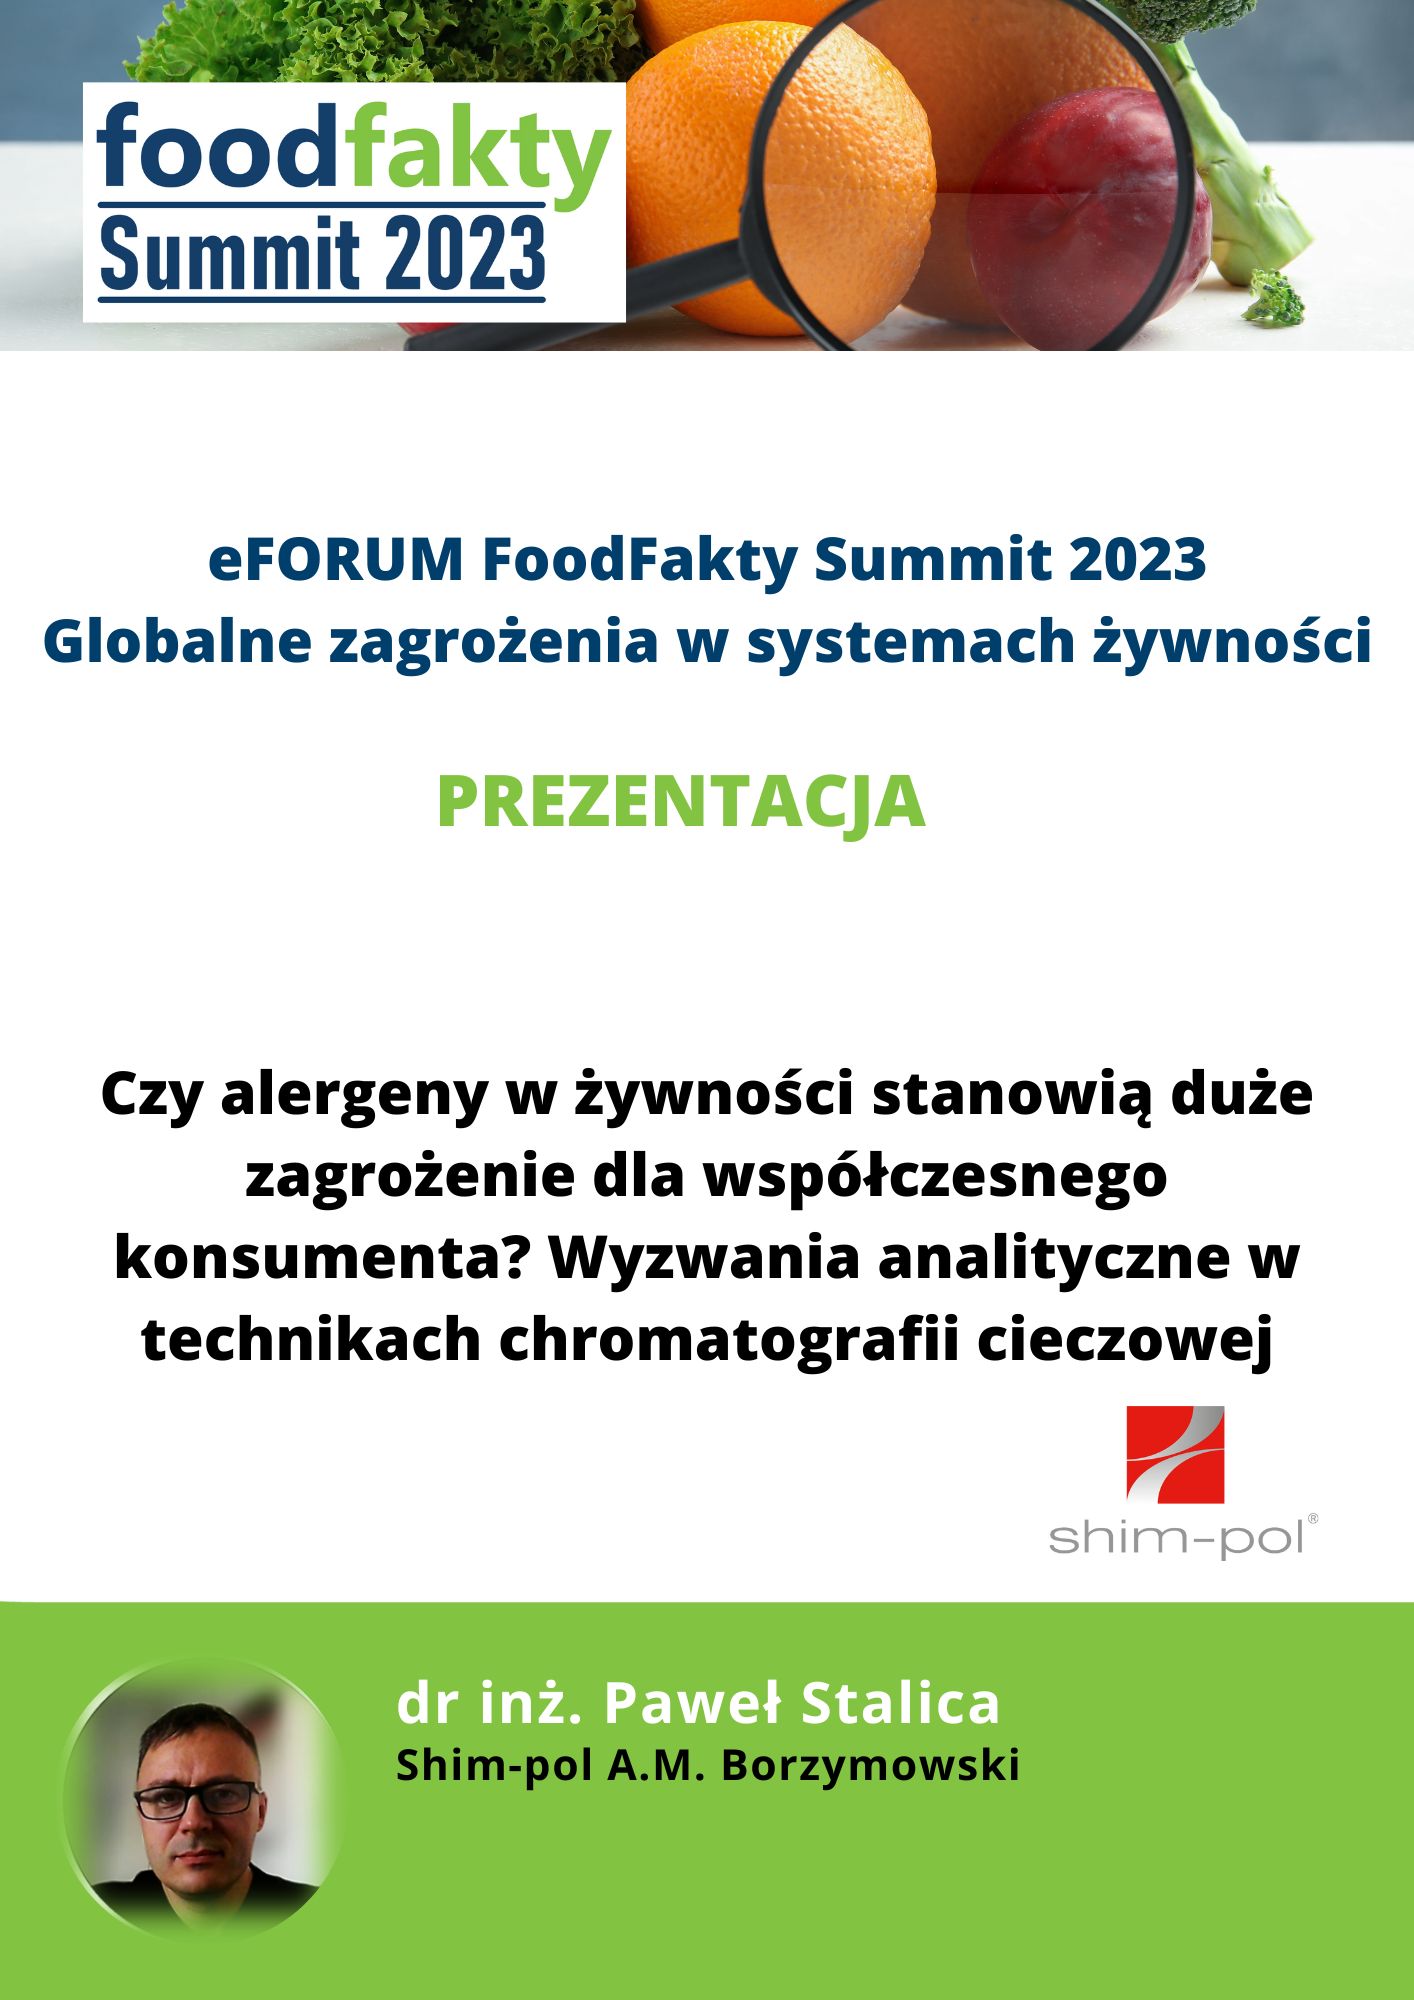 FoodFakty Summit Globalne i rosnące zagrożenia w systemach żywności - prezentacja Shim-pol A.M. Borzymowski